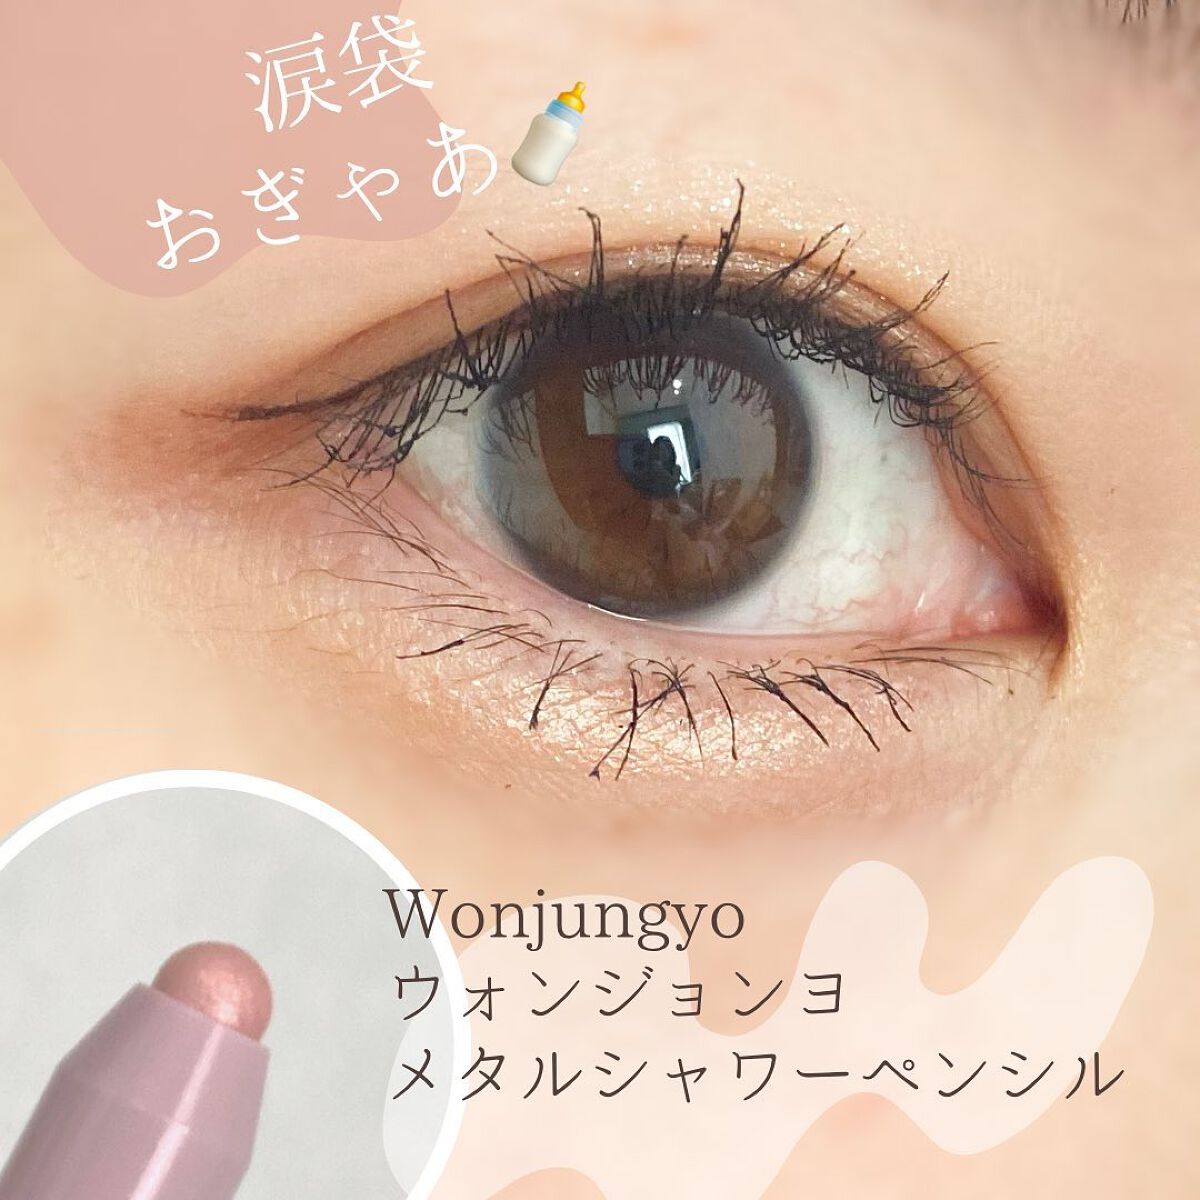 ウォンジョンヨ メタルシャワーペンシル｜Wonjungyoを使った涙袋